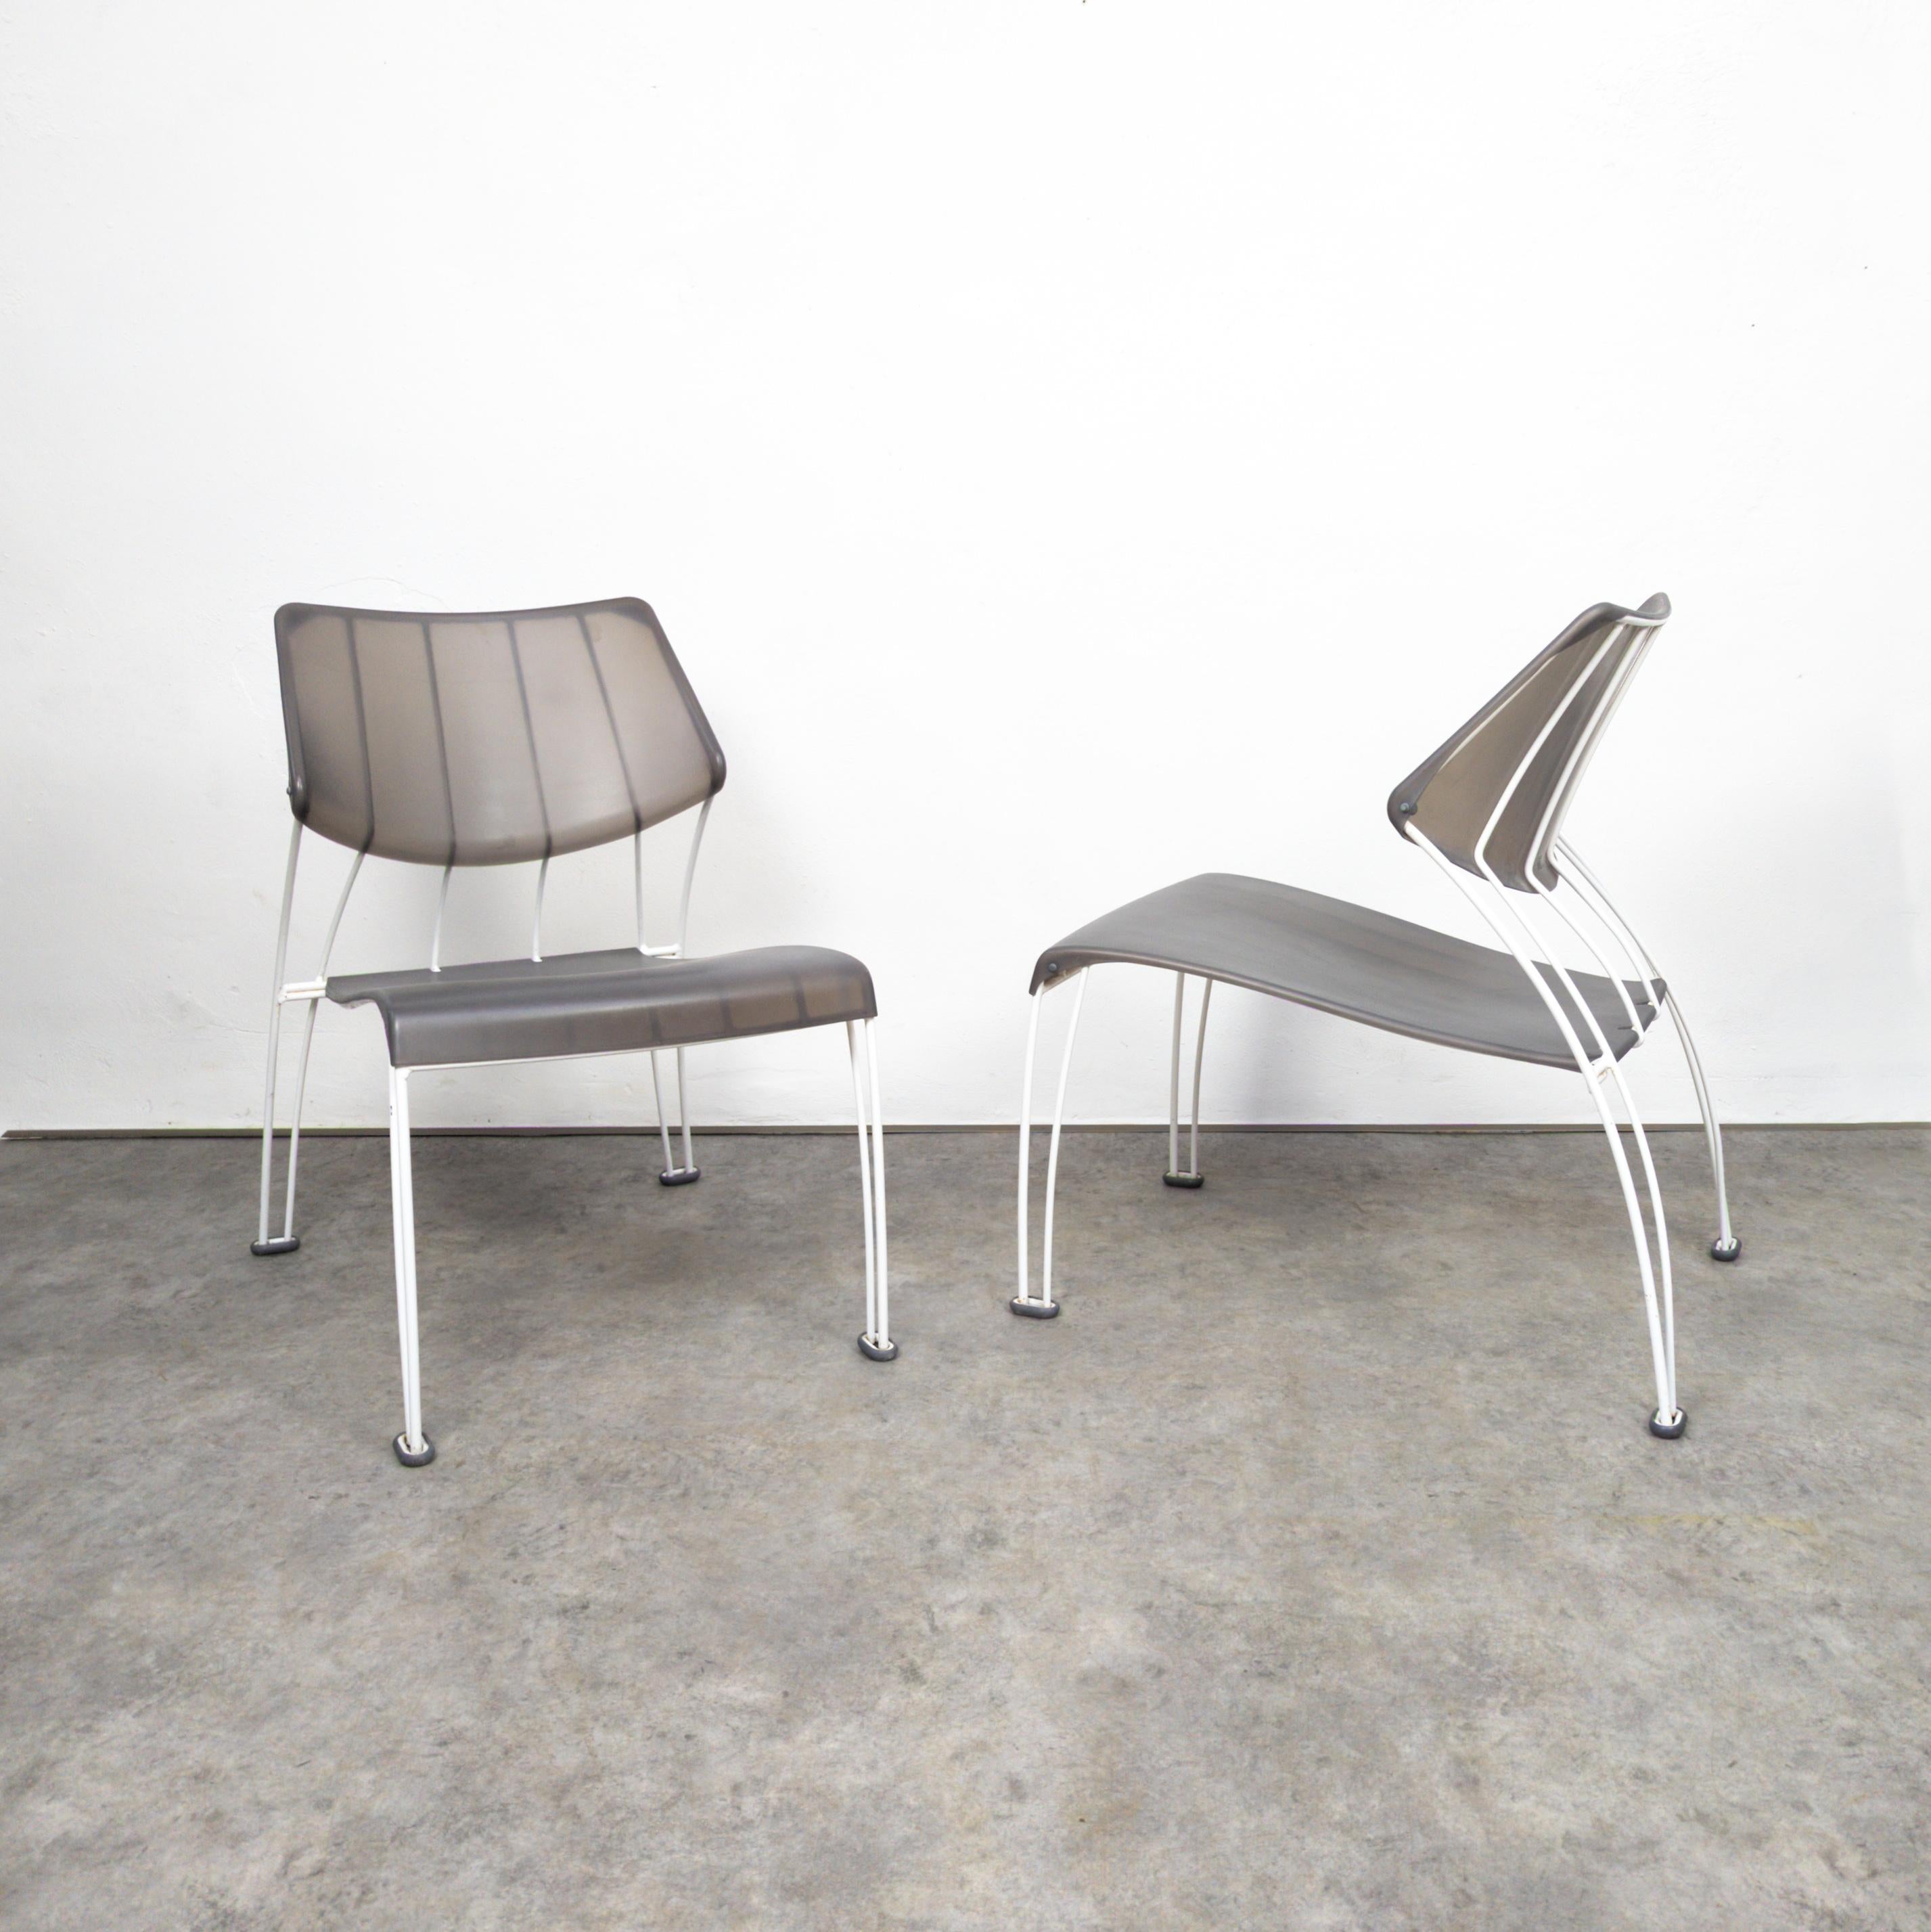 Ein Paar fantastischer postmoderner Loungesessel, entworfen von Monika Mulder für Ikea im Jahr 1995. Die Ikea PS Hässlö Stühle, entworfen von Monika Mulder, sind schlicht und modern. Sie zeichnen sich durch ein minimalistisches Design mit klaren